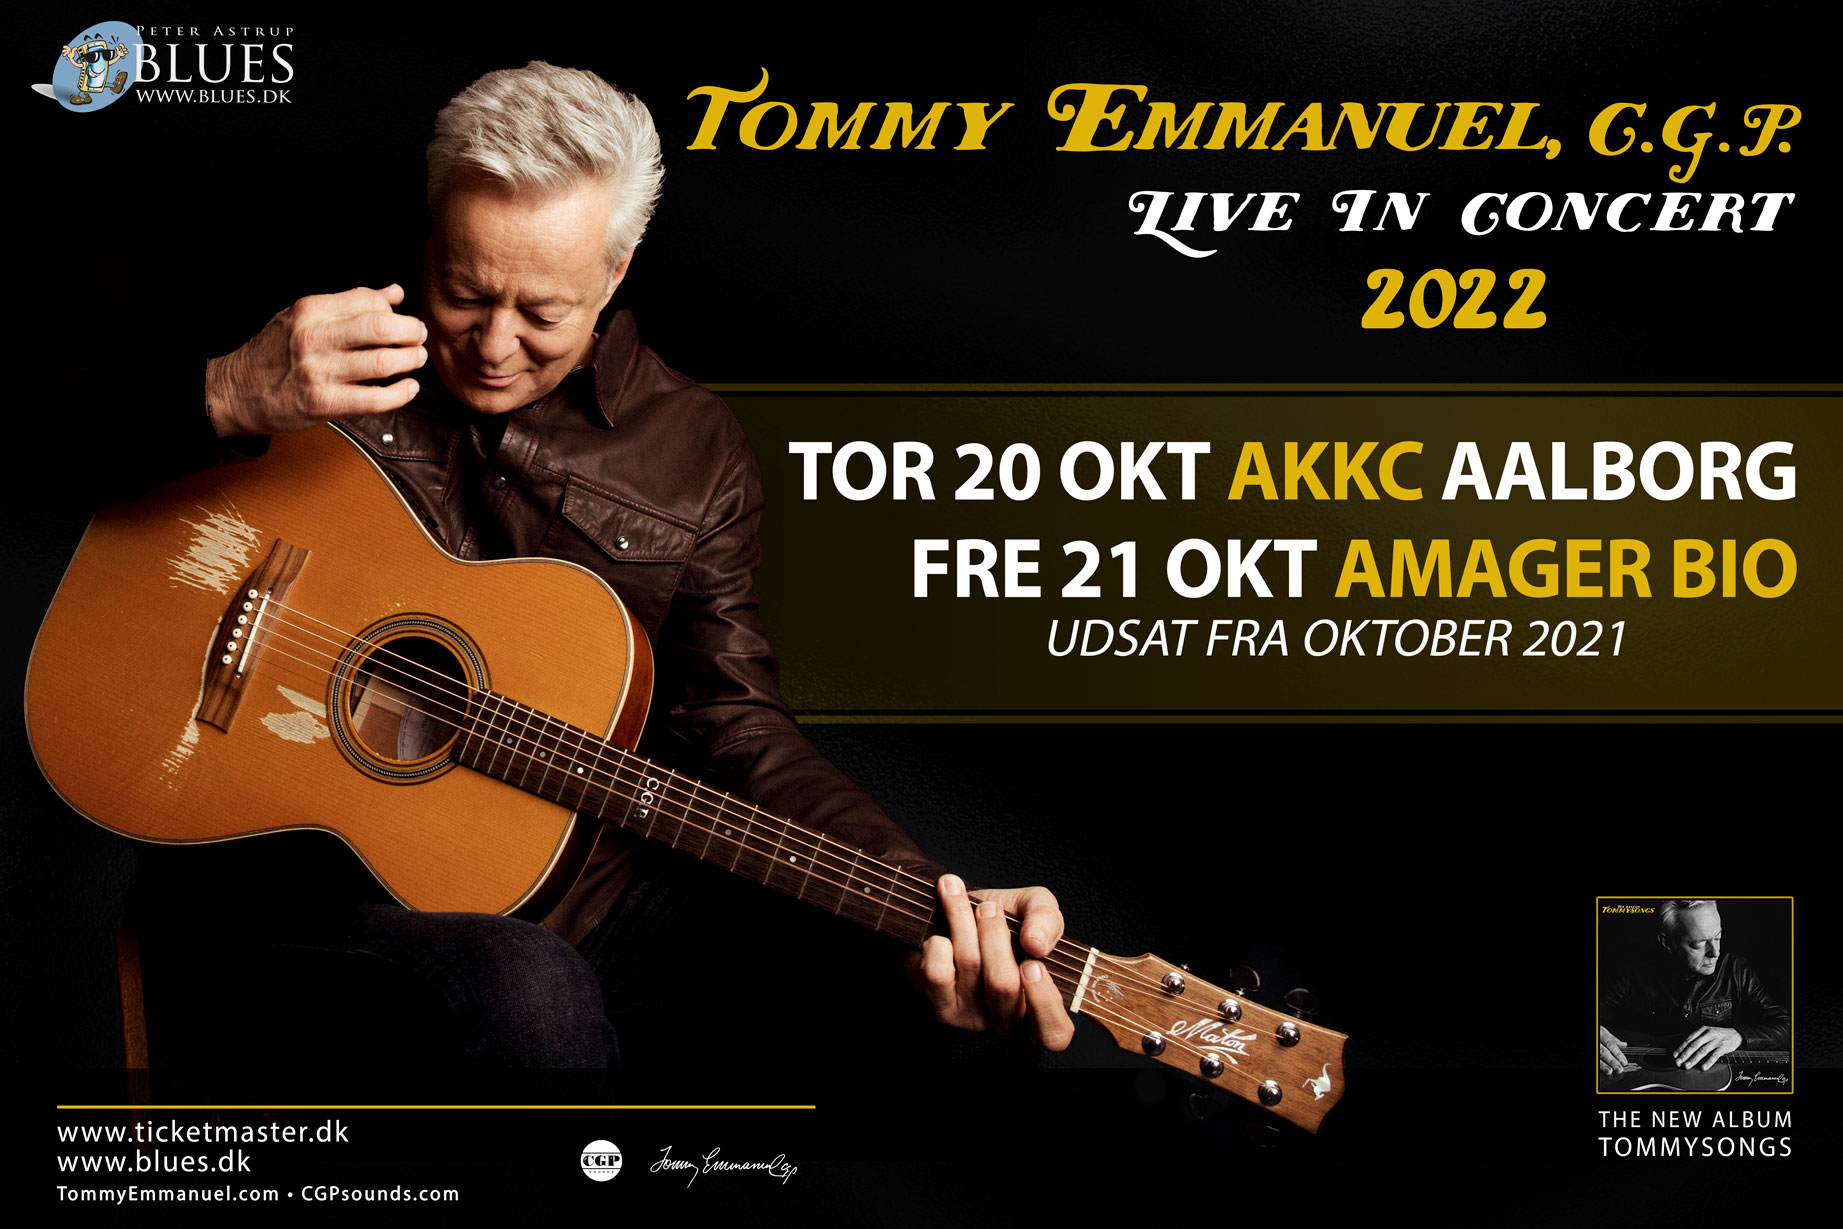 Tommy Emmanuel 2021 turne, udsat til oktober 2022